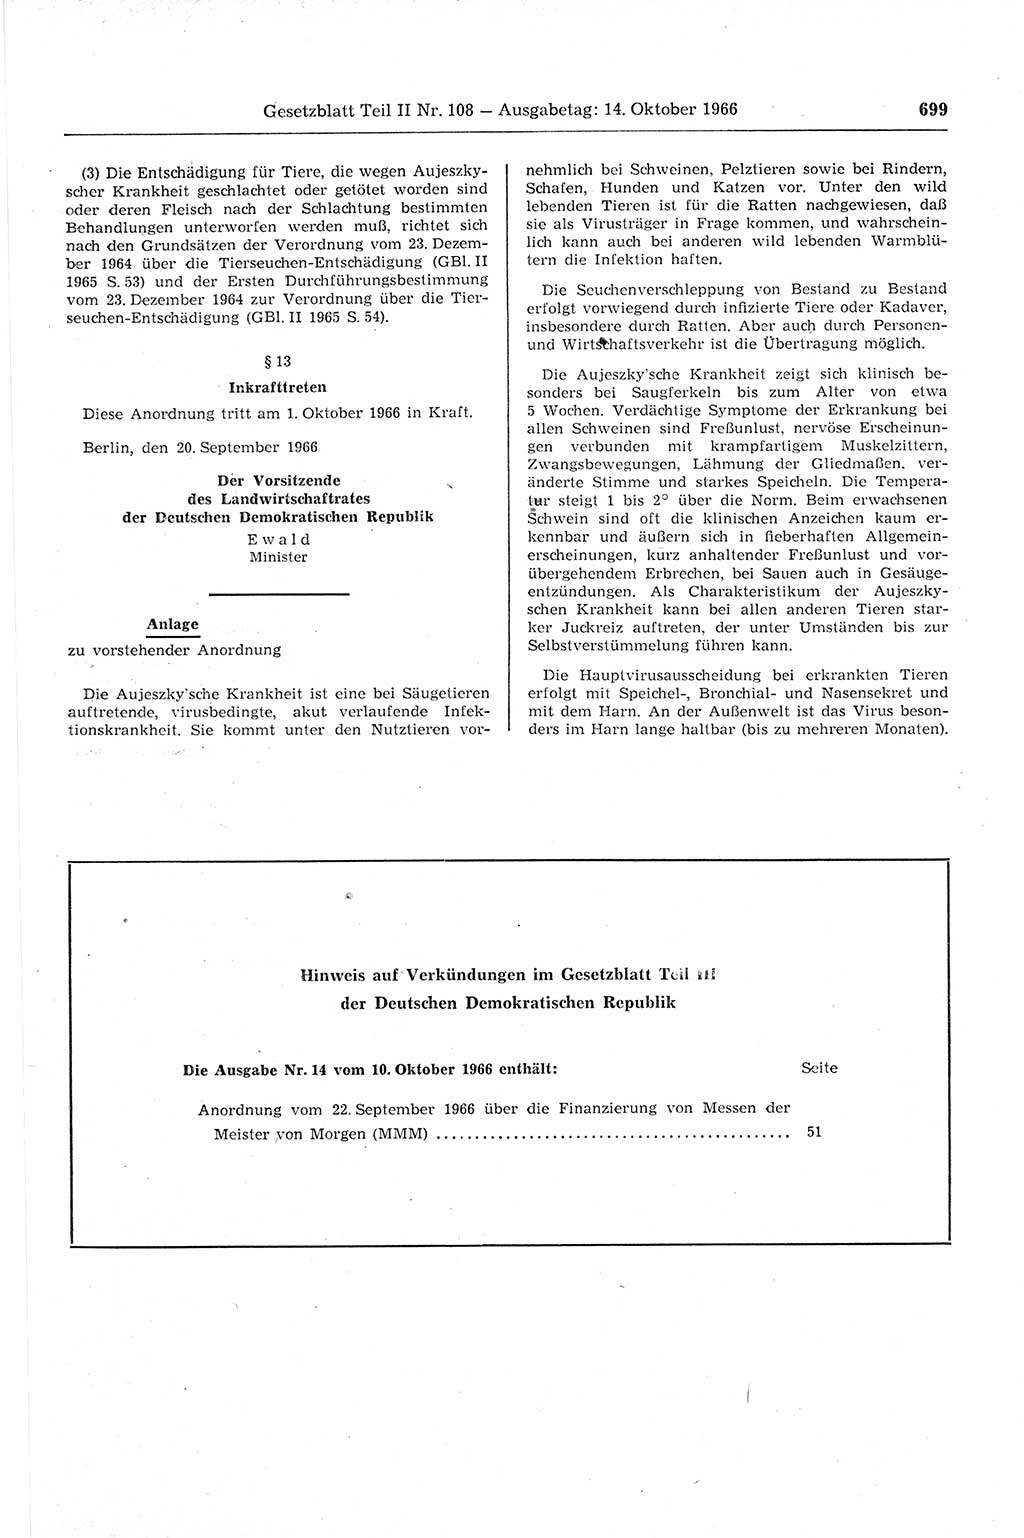 Gesetzblatt (GBl.) der Deutschen Demokratischen Republik (DDR) Teil ⅠⅠ 1966, Seite 699 (GBl. DDR ⅠⅠ 1966, S. 699)